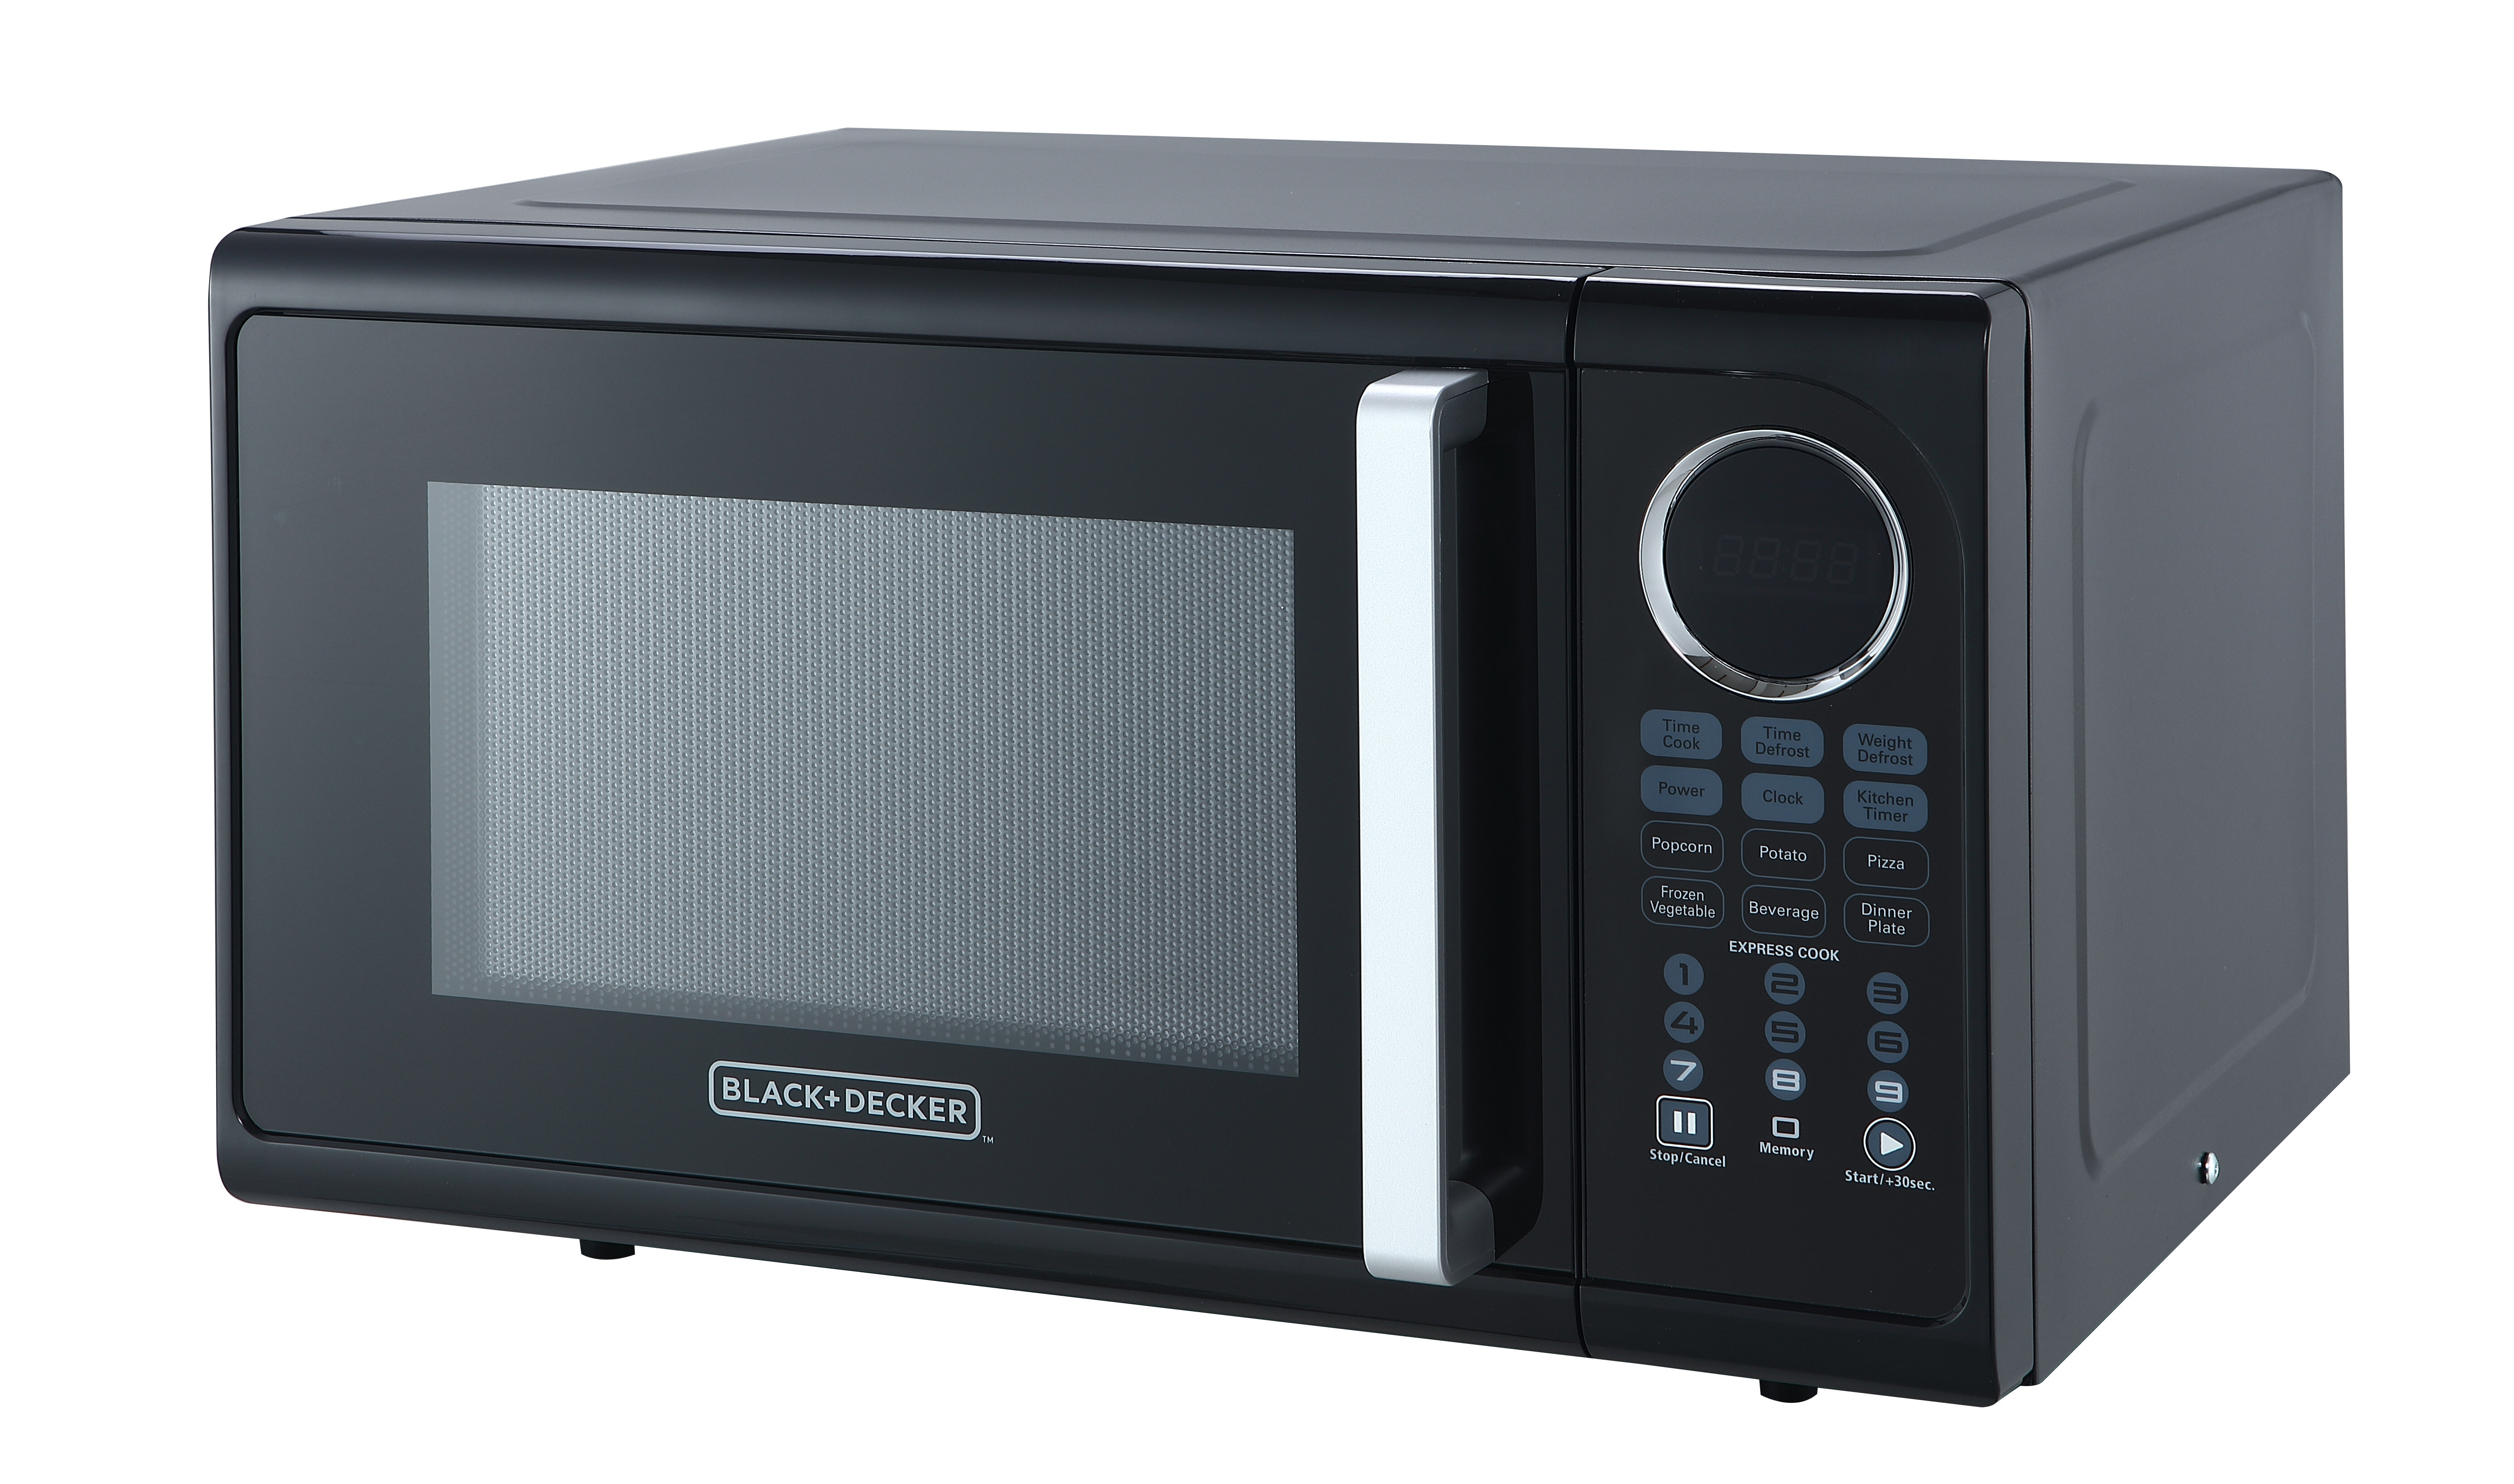 https://assets.wfcdn.com/im/00539725/compr-r85/6700/67004600/blackdecker-09-cubic-feet-countertop-microwave.jpg